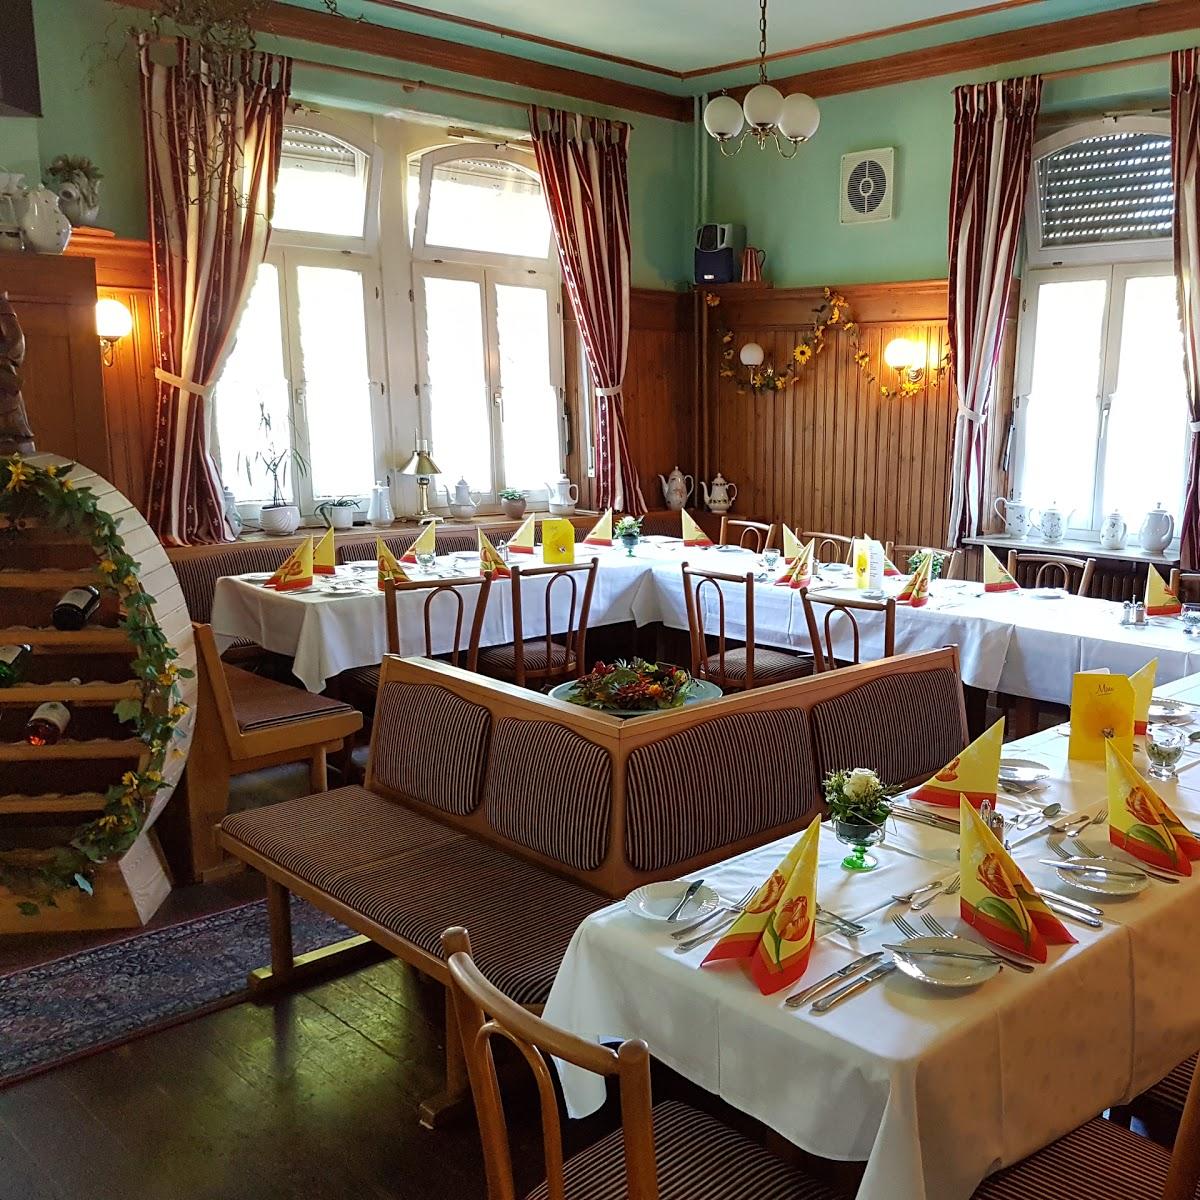 Restaurant "Zur Alten Eisenbahn" in  Collenberg